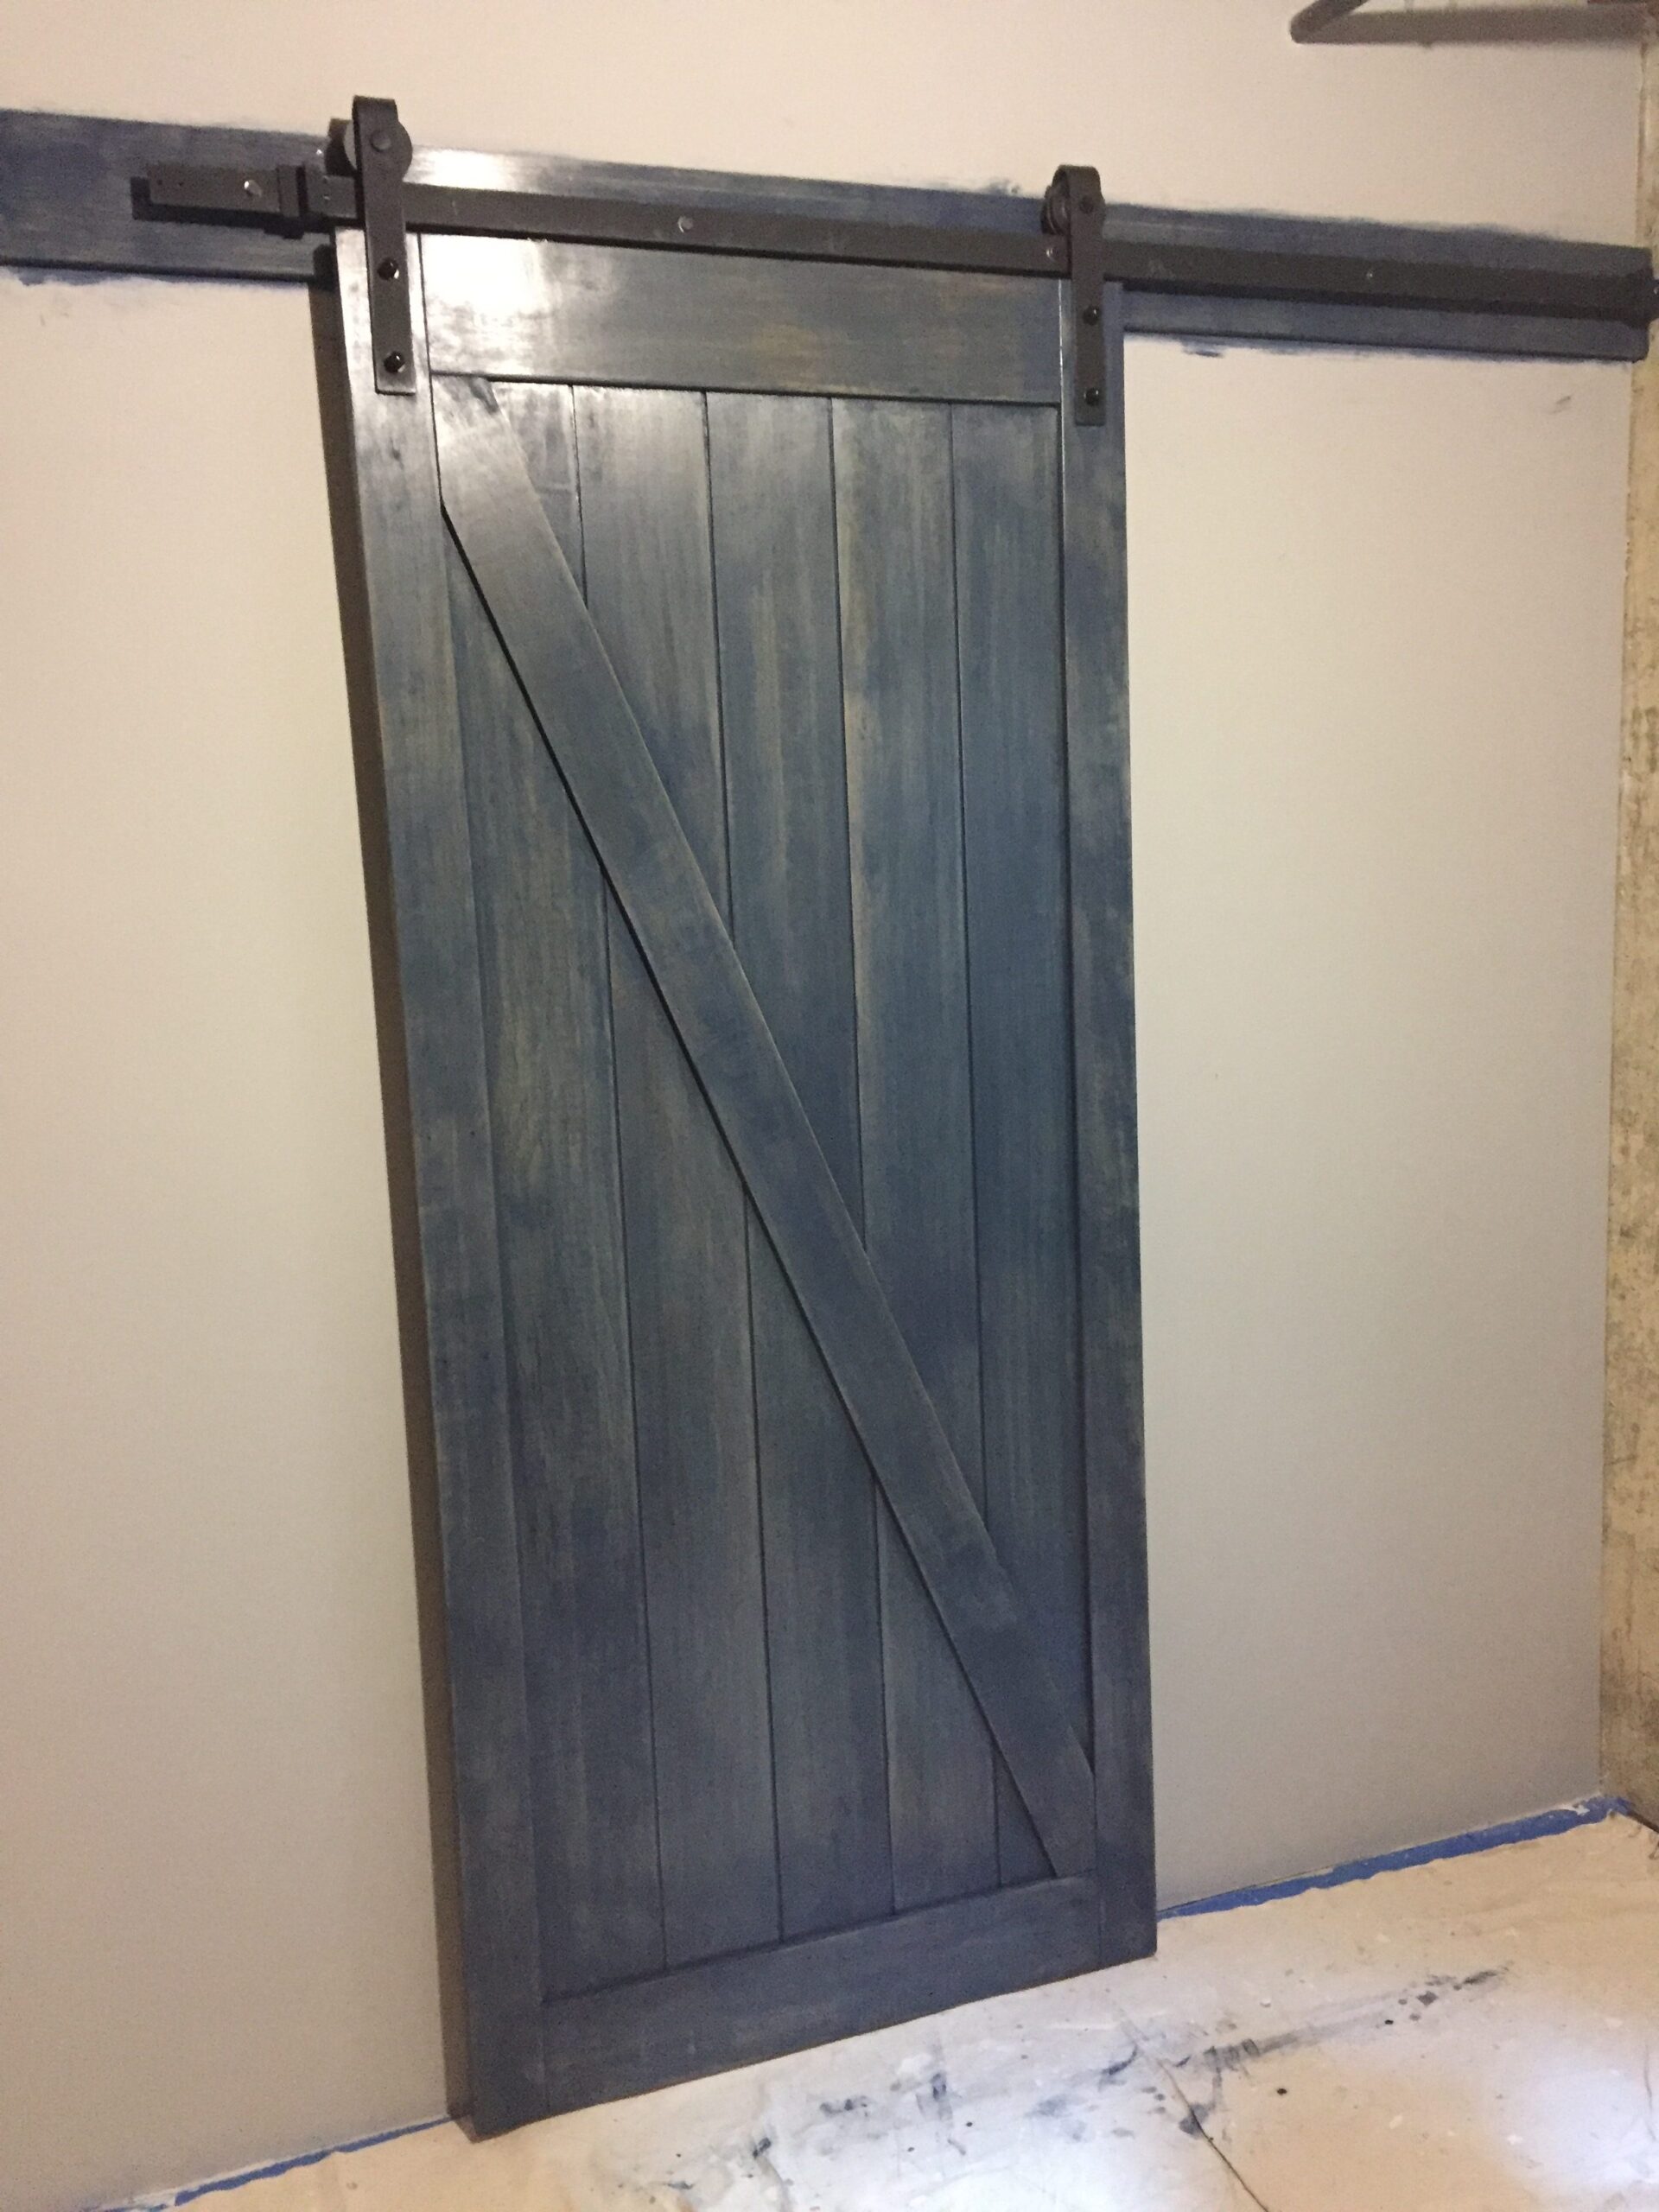 A blue wooden sliding door